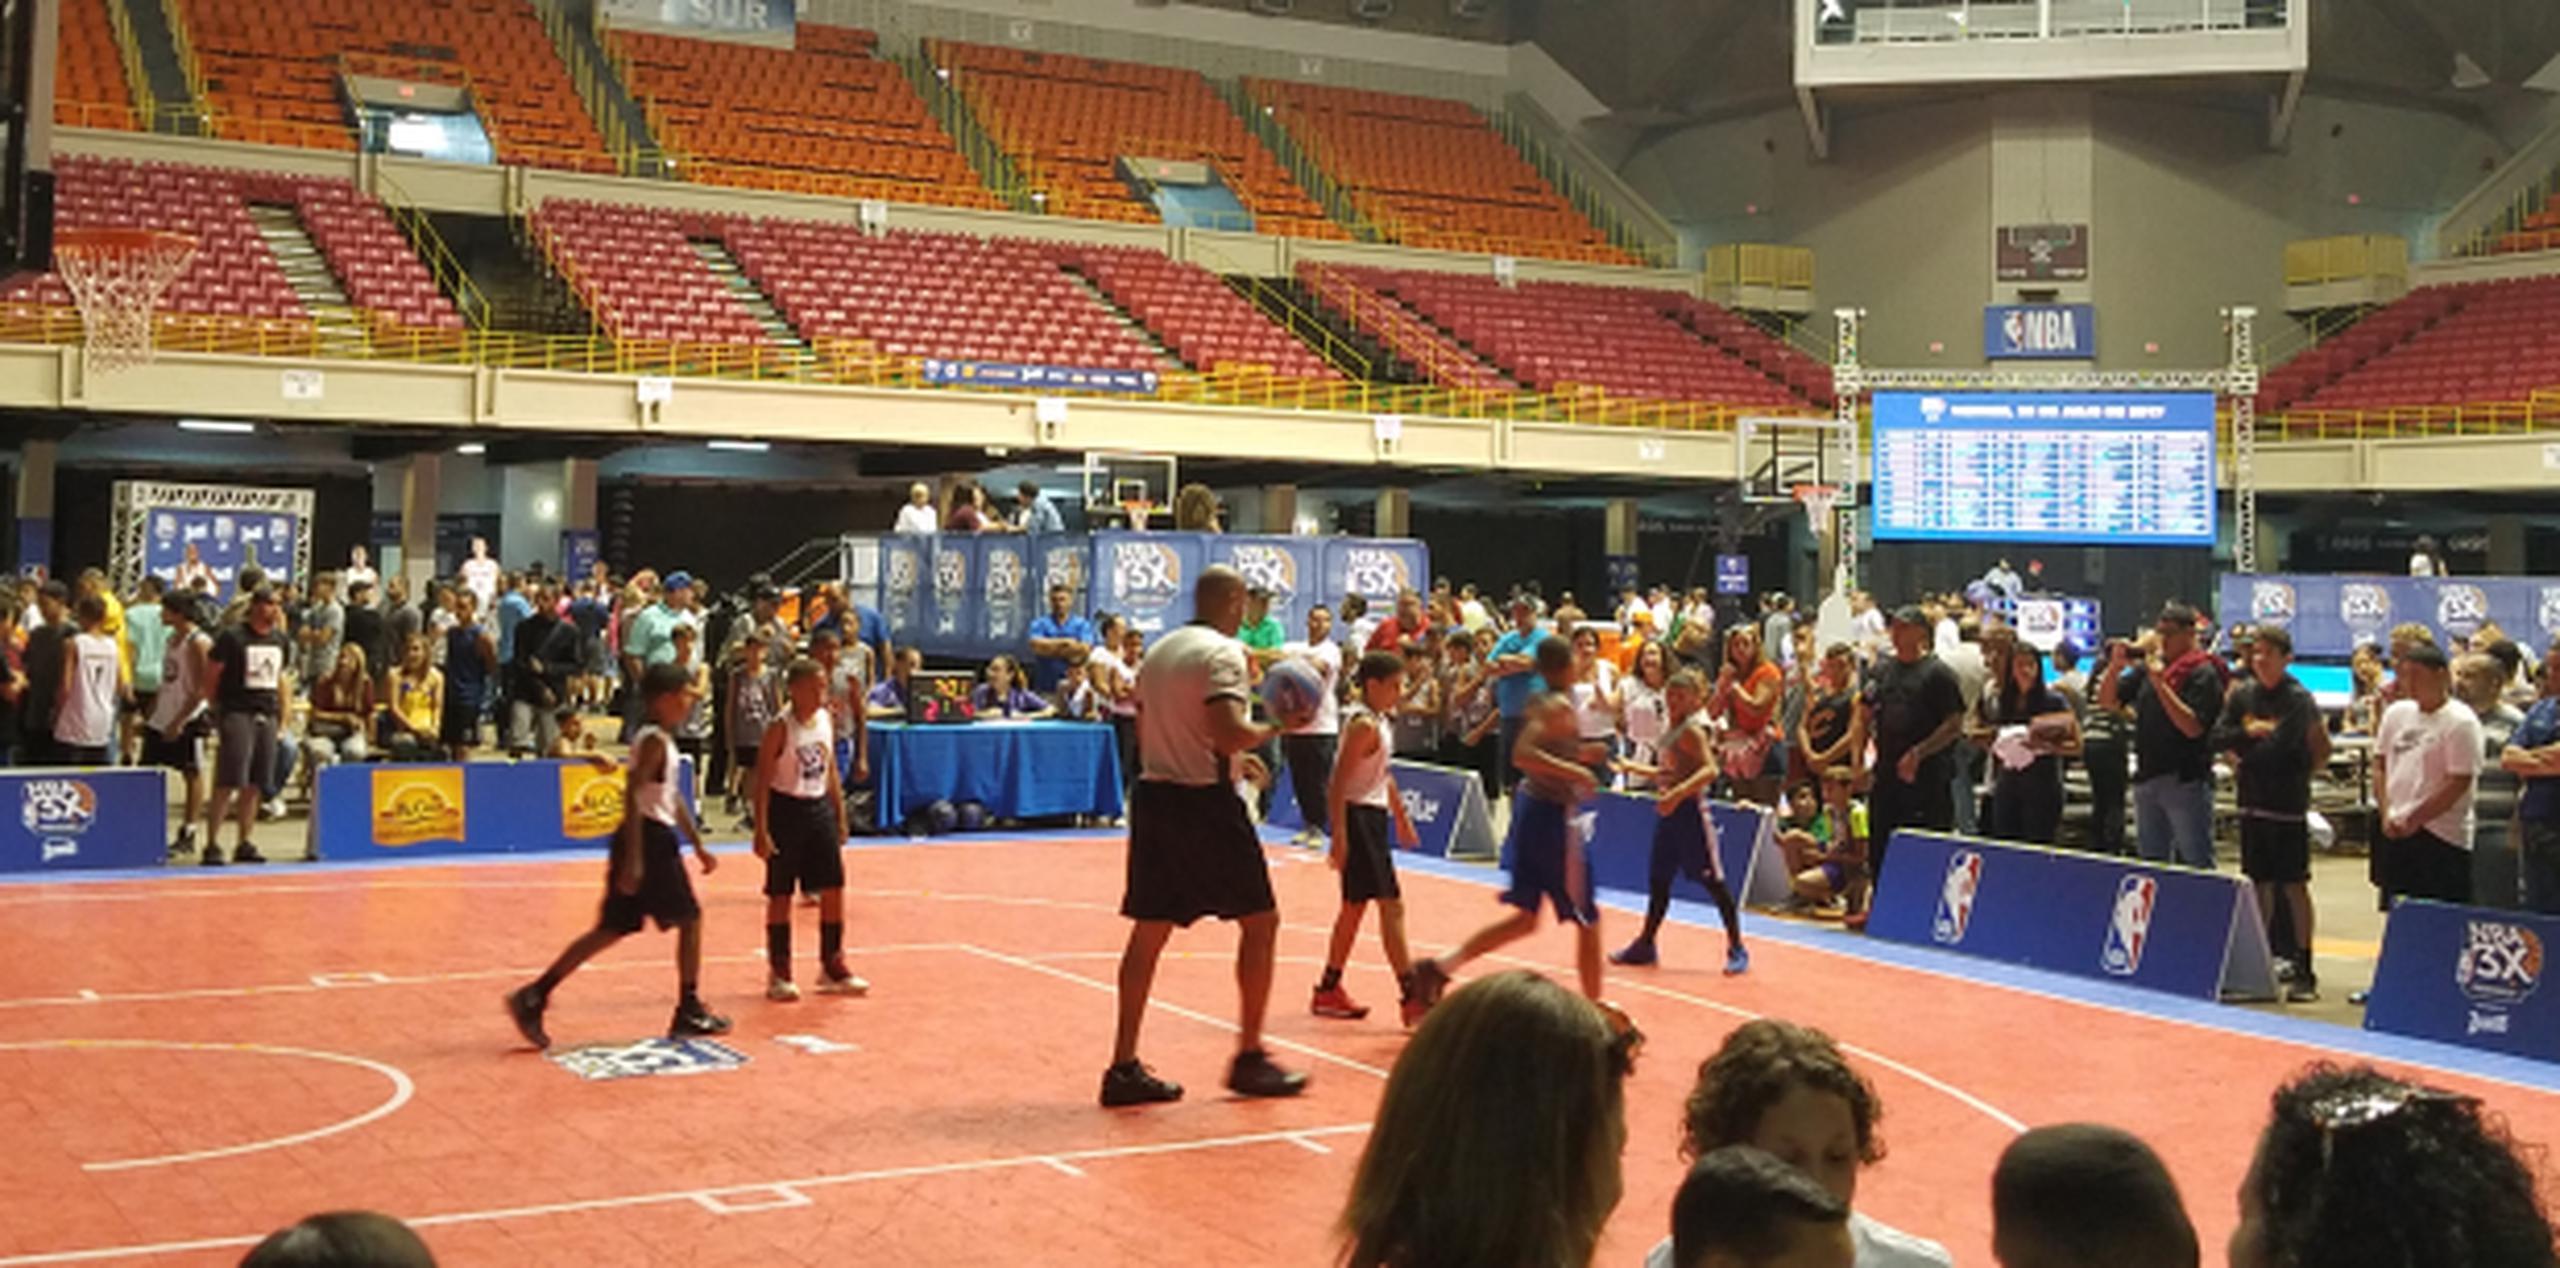 La competencia será un torneo de baloncesto de 3 pa’ 3 para niños de las edades ocho, 10, 12, 14, 16, 18 y categoría abierta para los varones. (Suministrada)